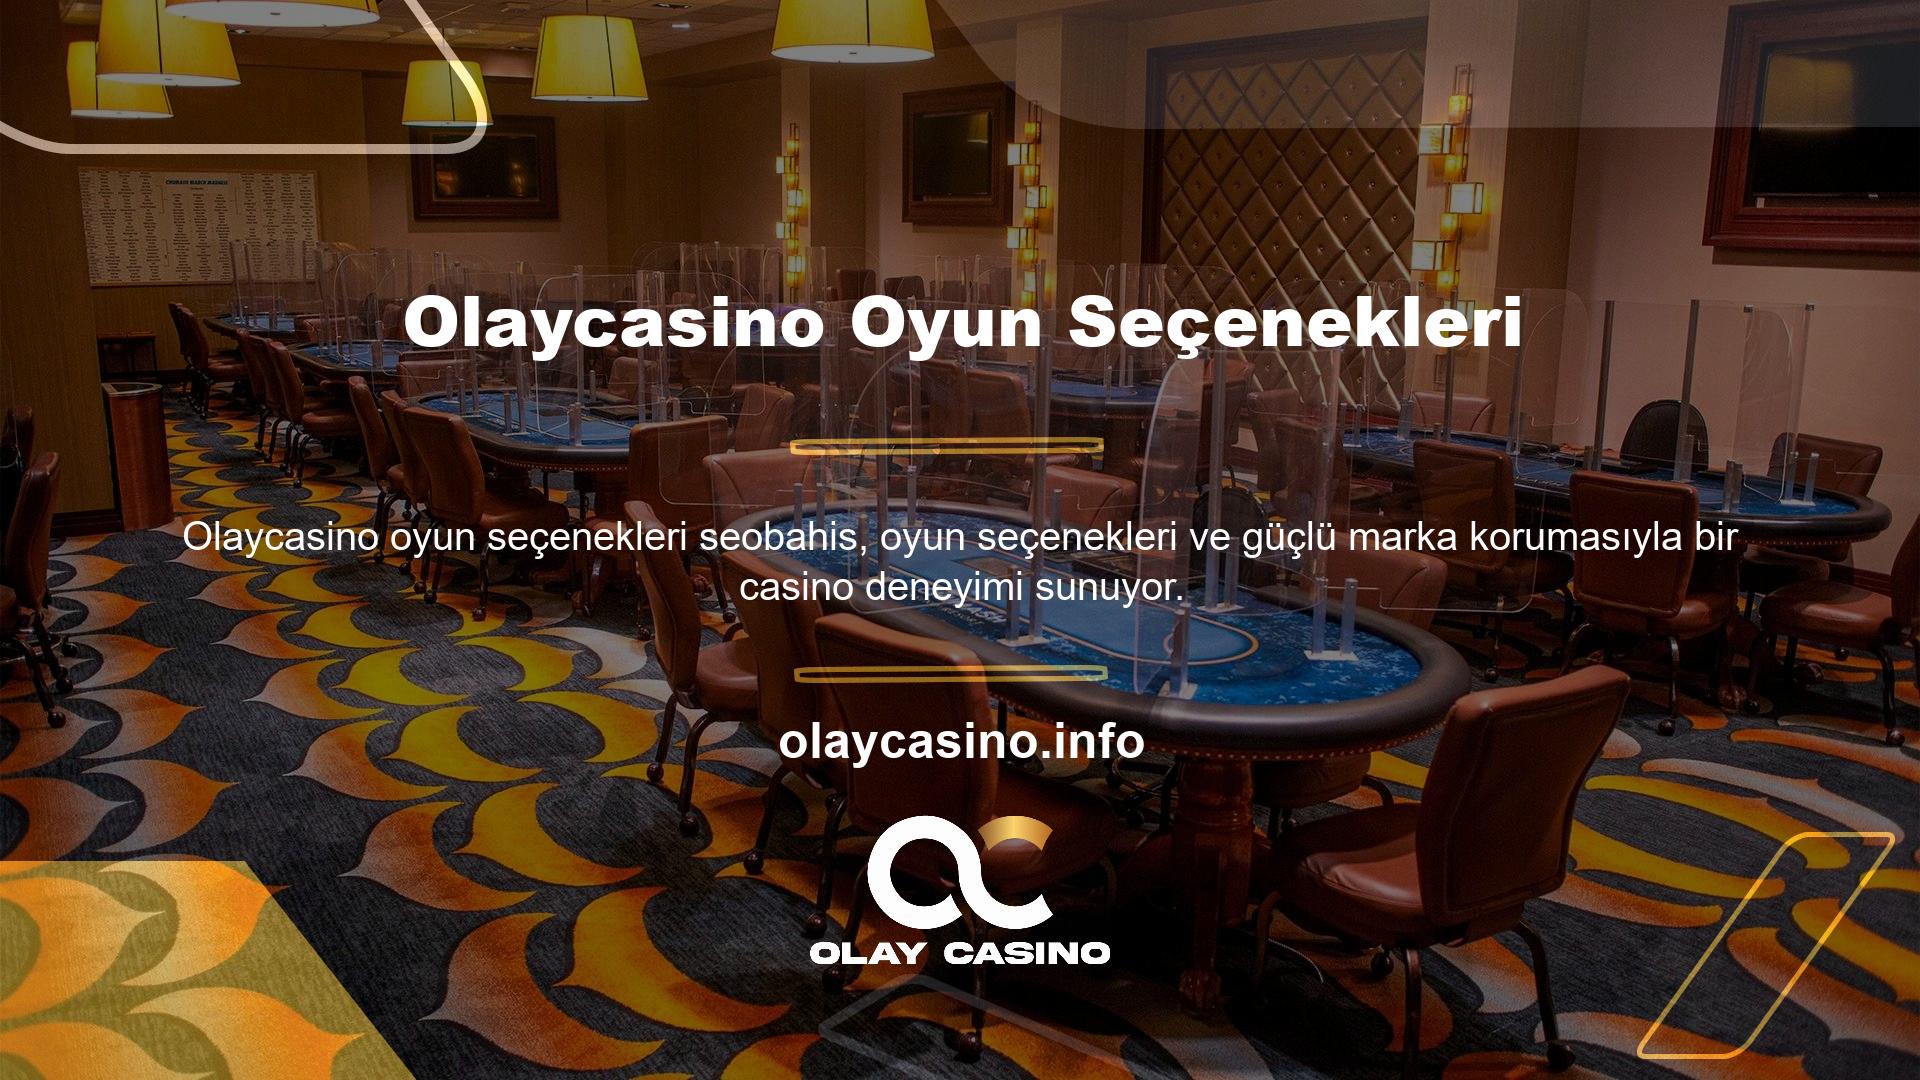 Site ayrıca 24 saat canlı desteğin yanı sıra uzman müşteri hizmetleriyle gerçek bir casino ve oyun deneyimi sunuyor